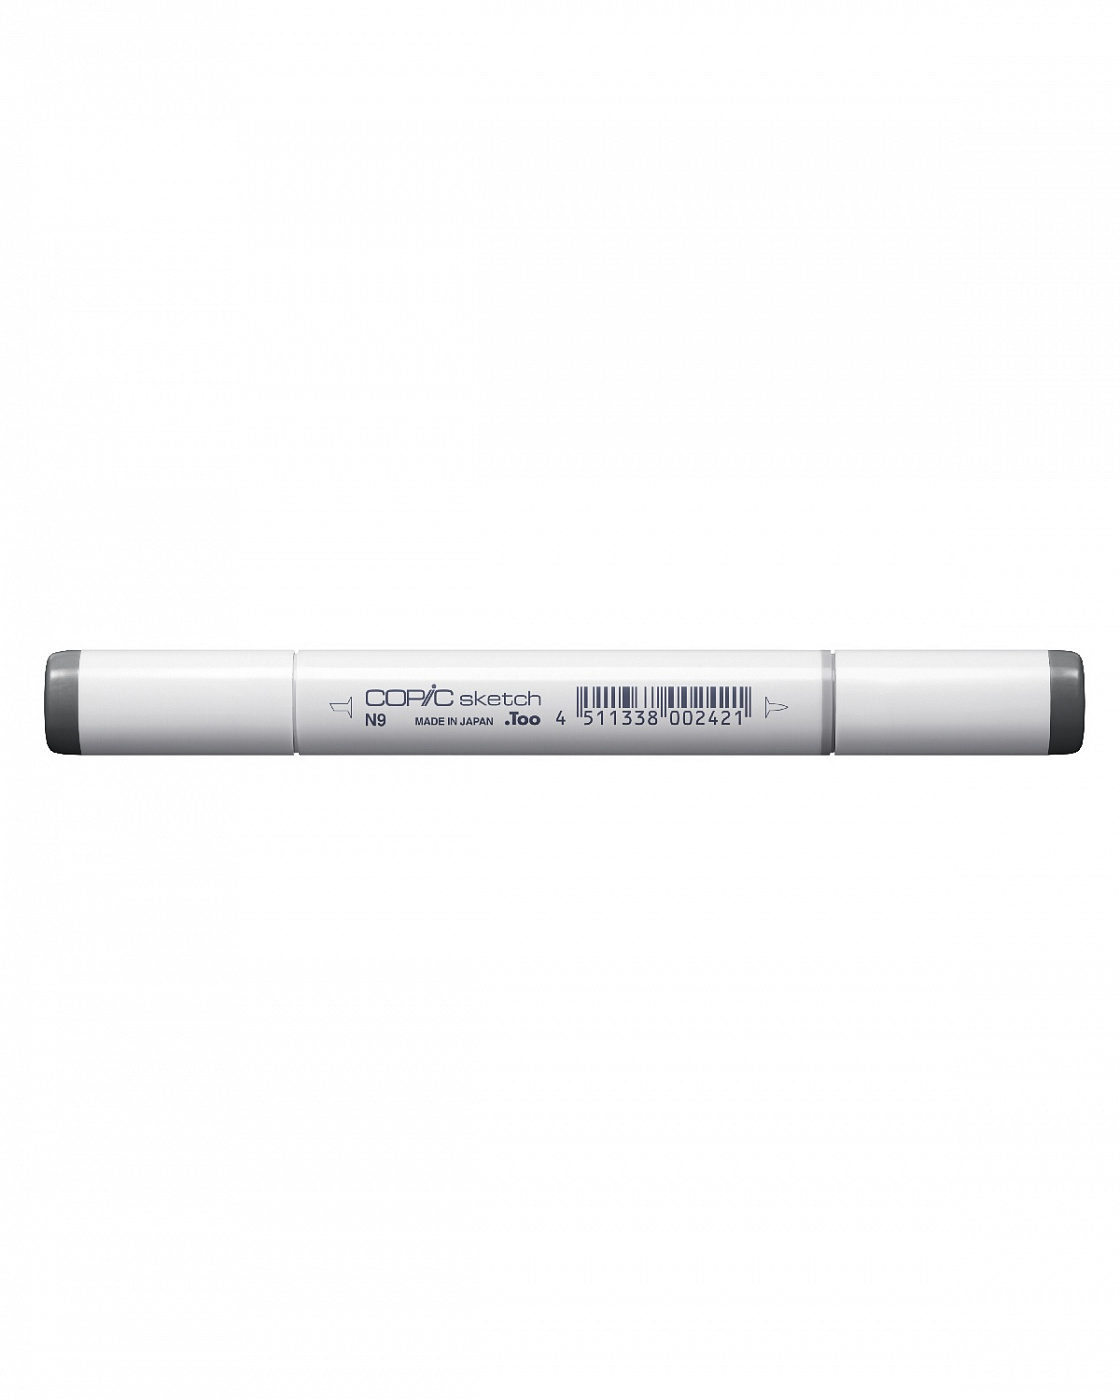 Маркер COPIC sketch N9 (нейтральный серый, neutral gray) (оттенок №9) маркер copic w4 теплый серый warm gray оттенок 4